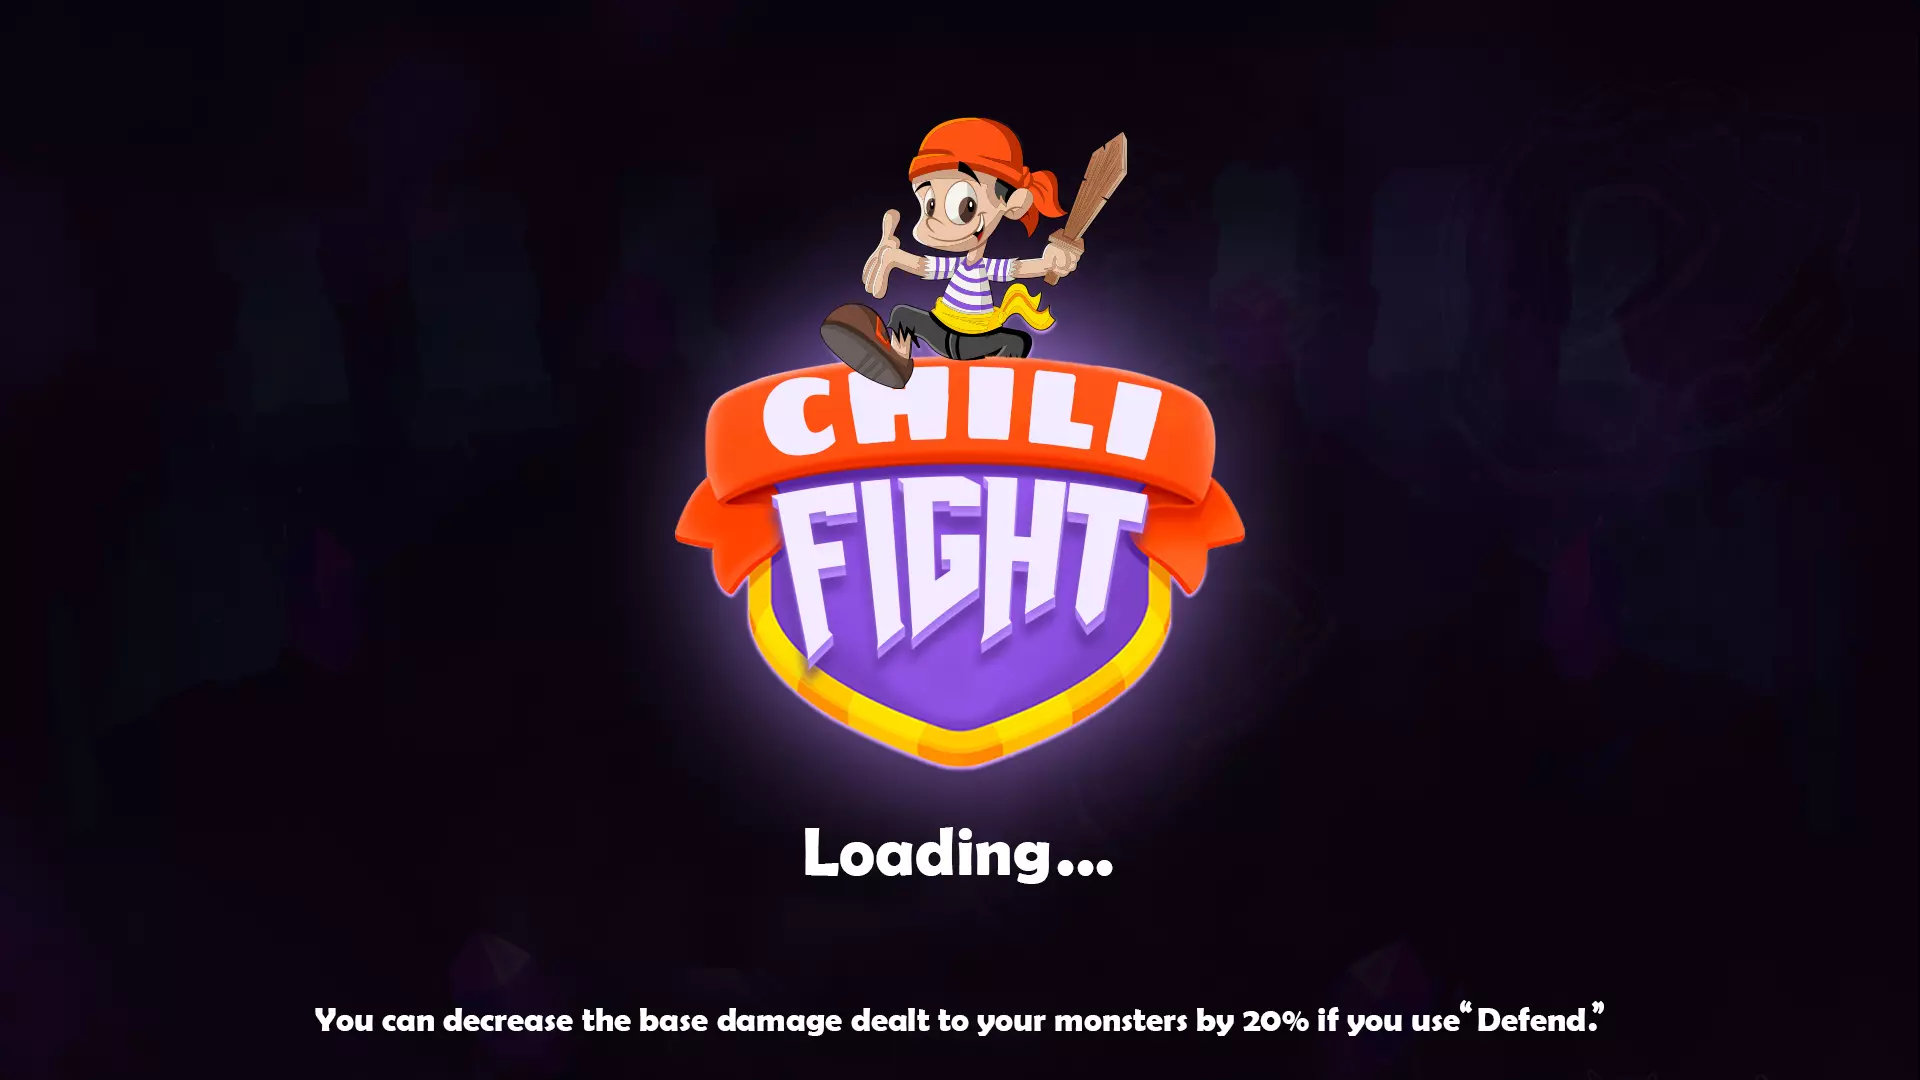 Chili-fight-1